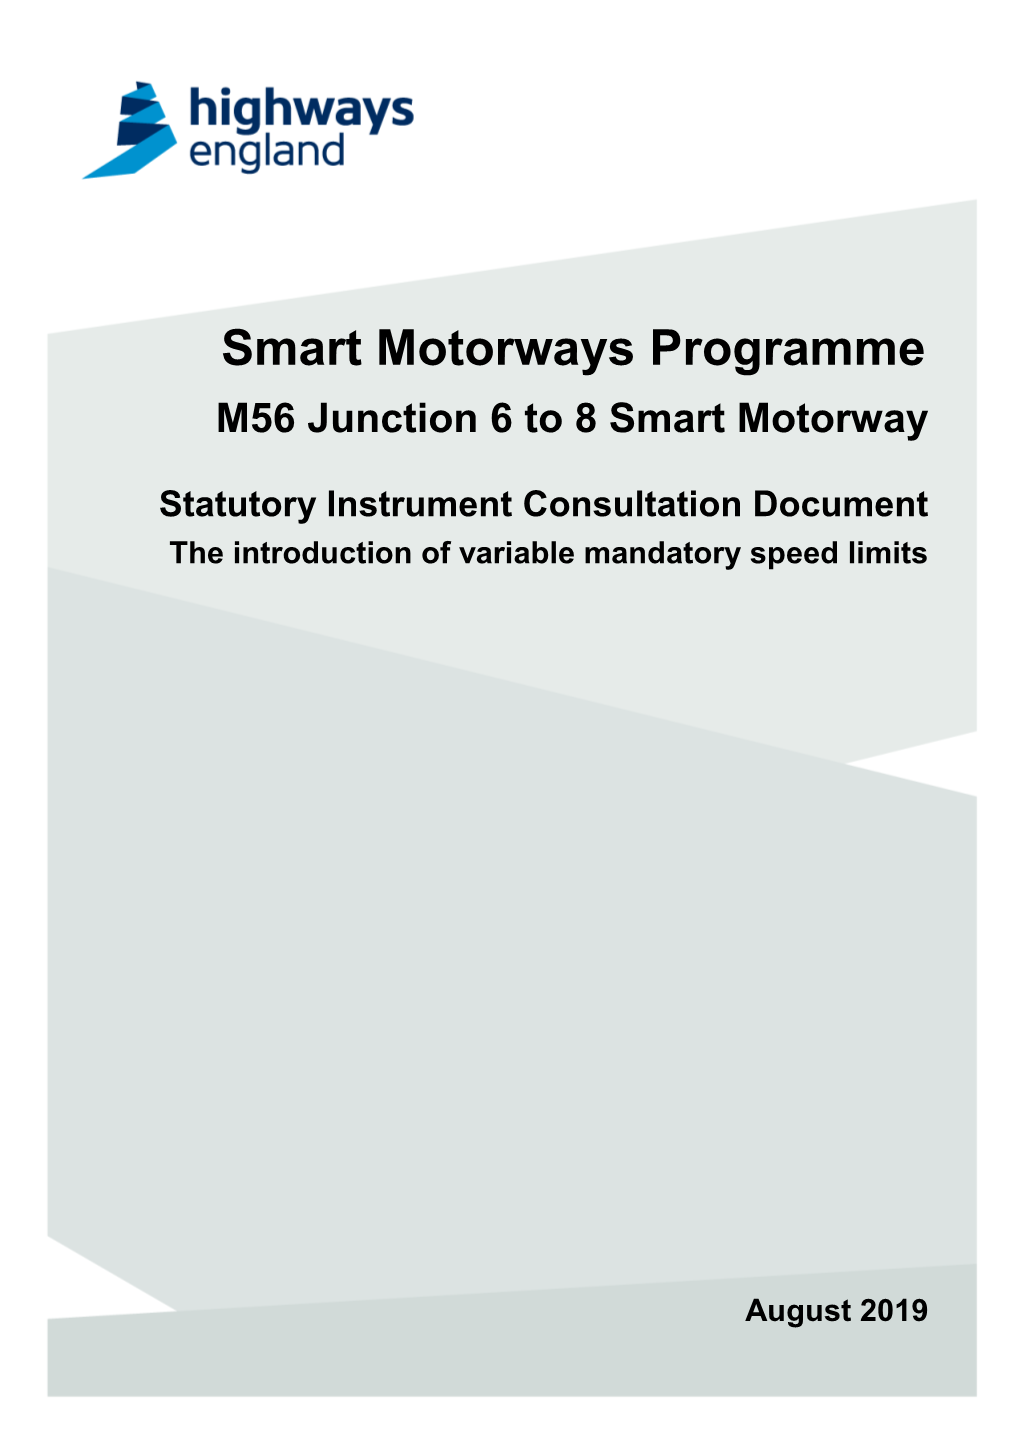 Smart Motorways Programme M56 Junction 6 to 8 Smart Motorway